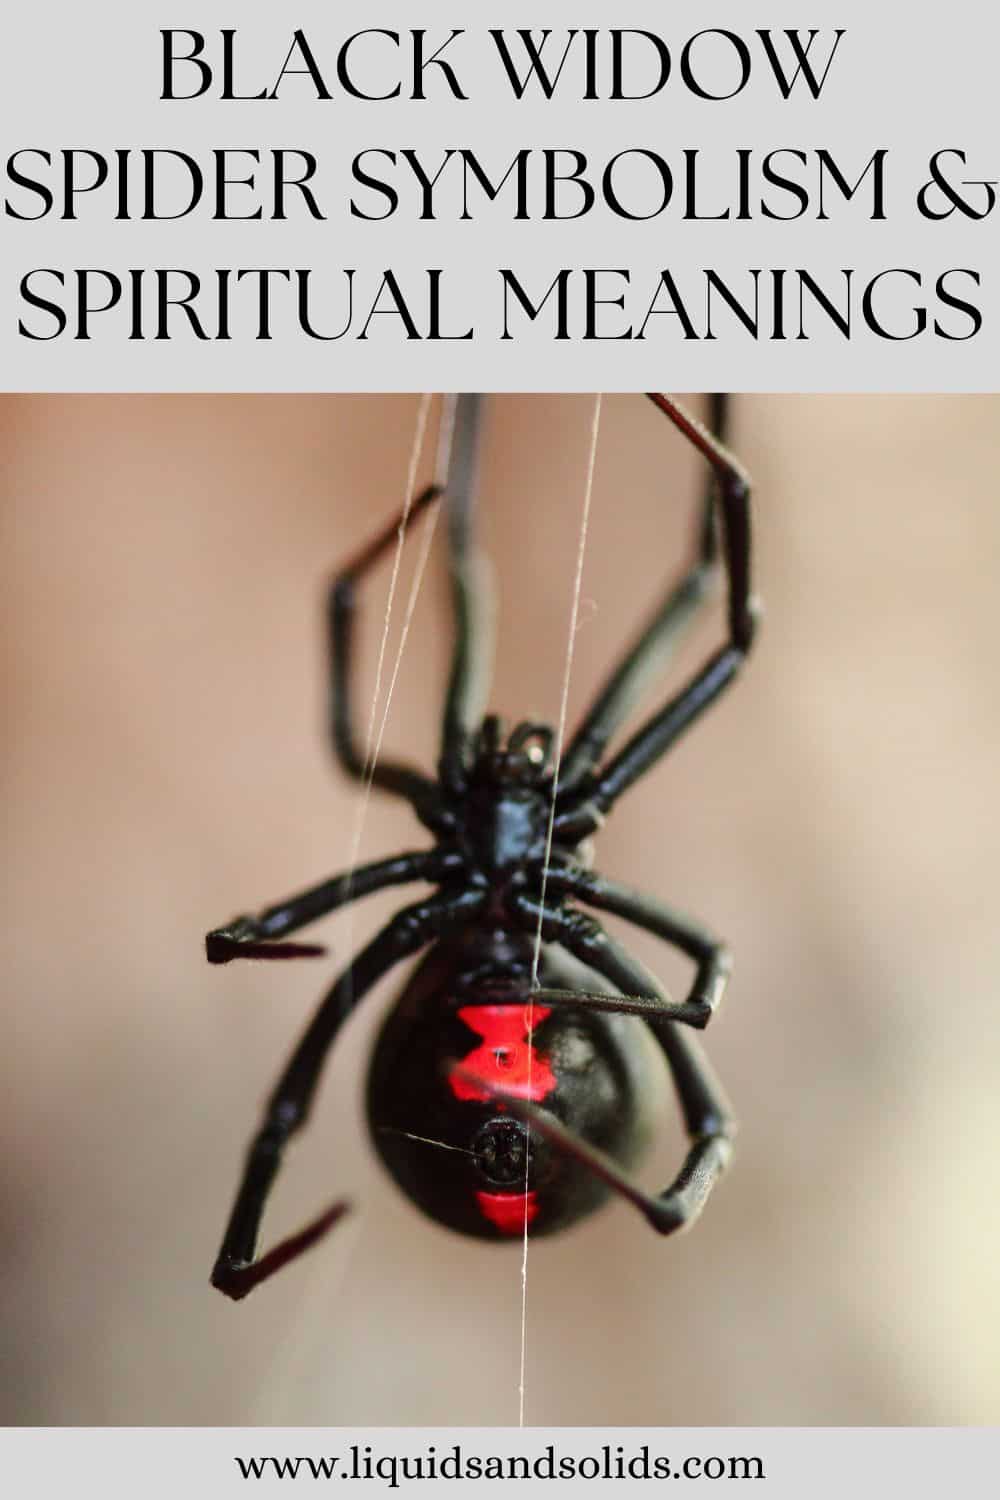  عنكبوت الأرملة السوداء رمزية وأمبير. المعاني الروحية